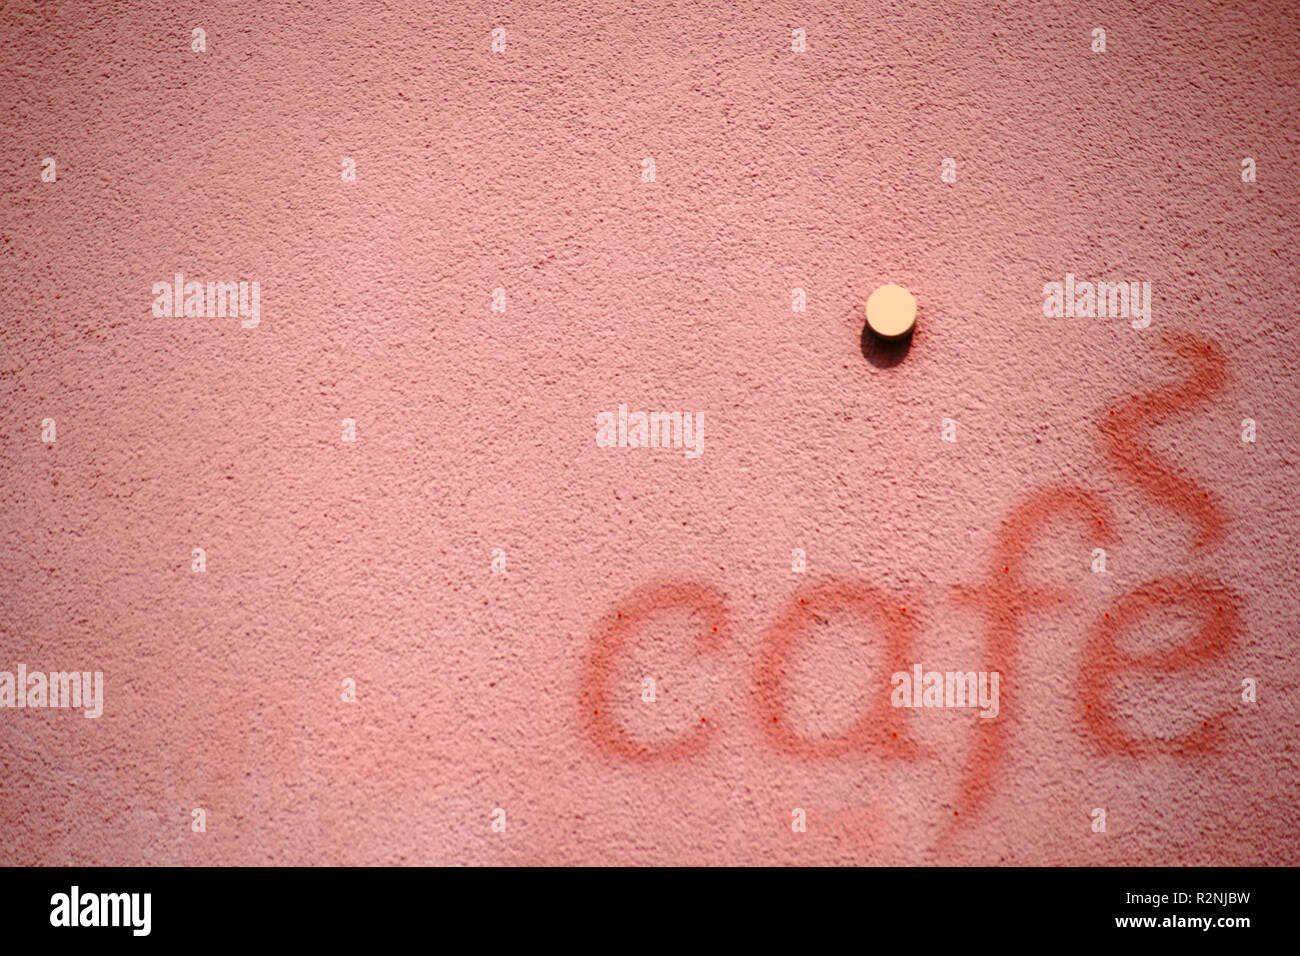 Las letras 'café' en la fachada de un edificio en el contraste de color a la brillante fachada, Foto de stock